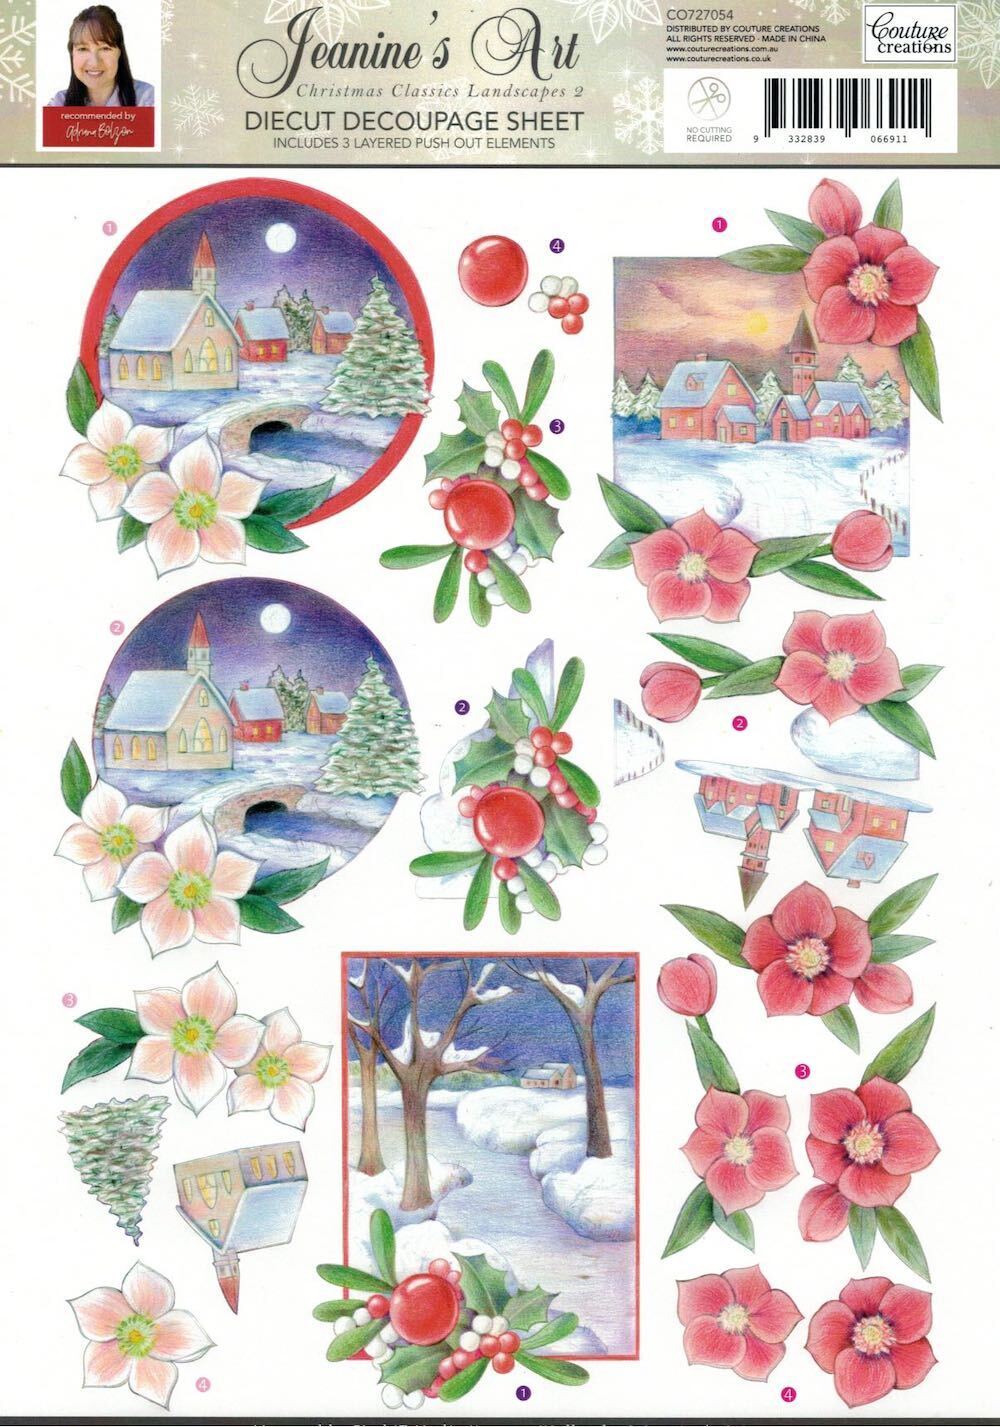 Jeanines Art 3D Decoupage A4 Sheet Christmas Classics Landscape 2